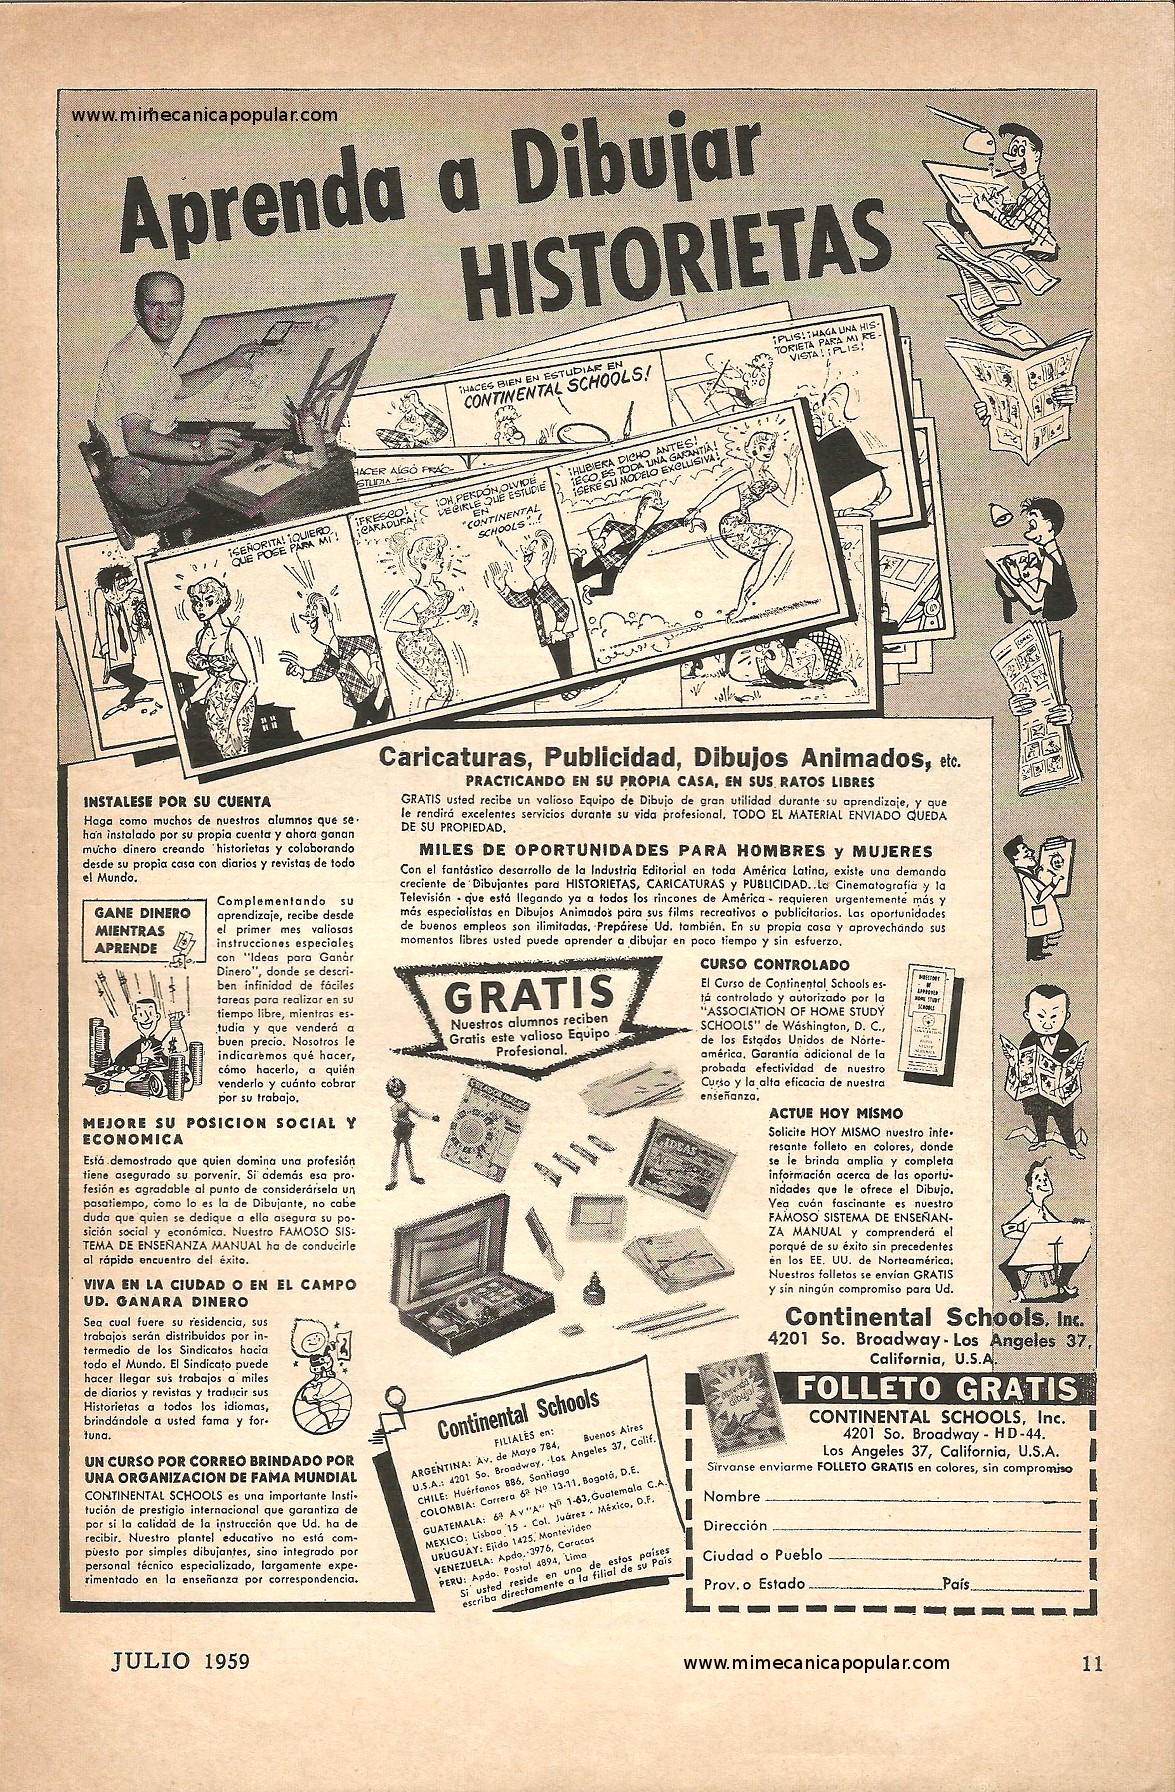 Publicidad - Continental Schools - Julio 1959